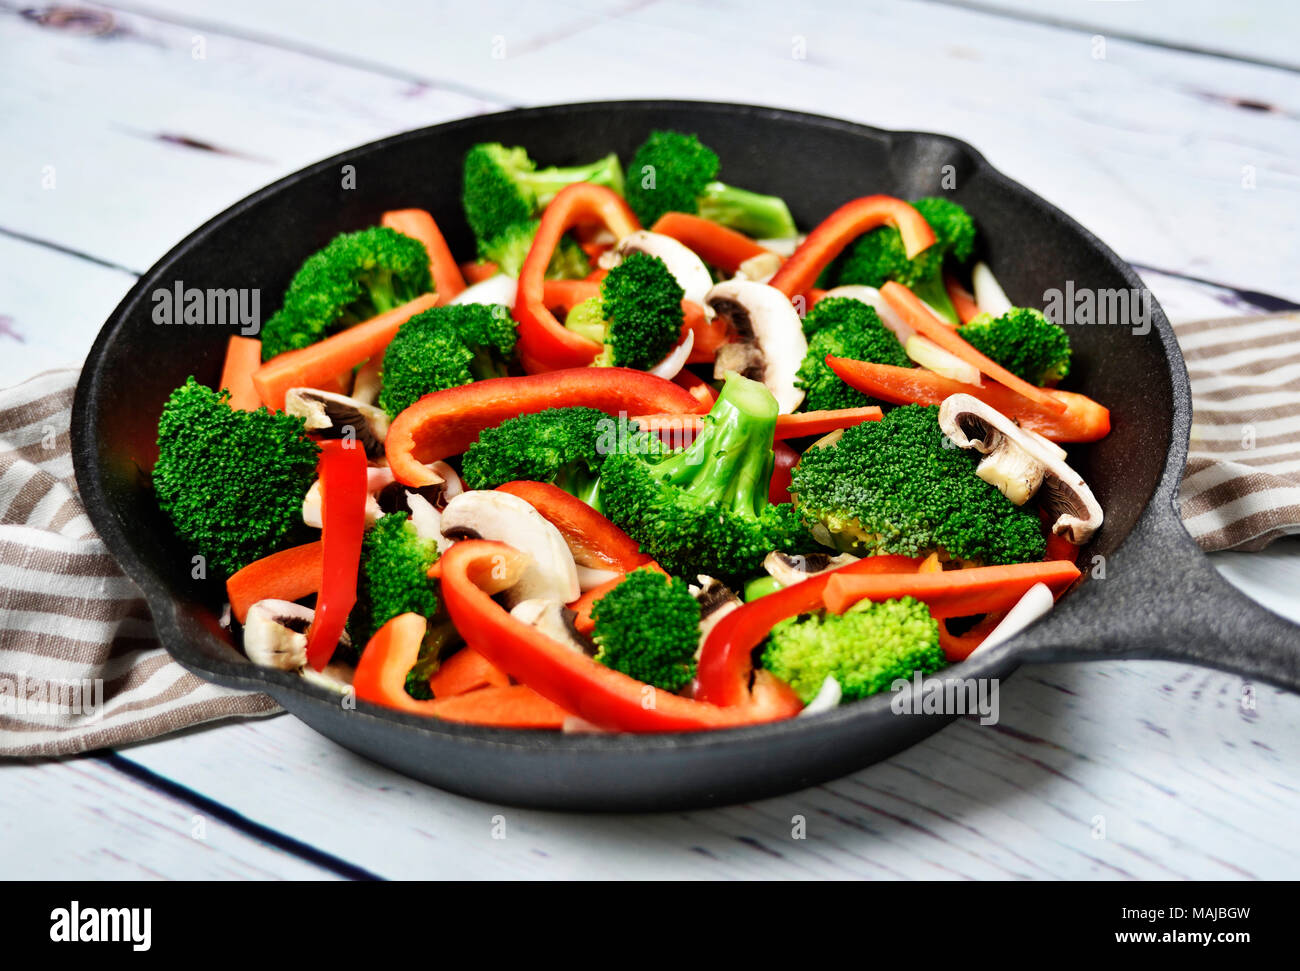 Gesunde Ernährung mit Gemüse in eine eiserne Pfanne oder Topf kochen. Brokkoli, rote Paprika, Möhren und Champignons. Stockfoto